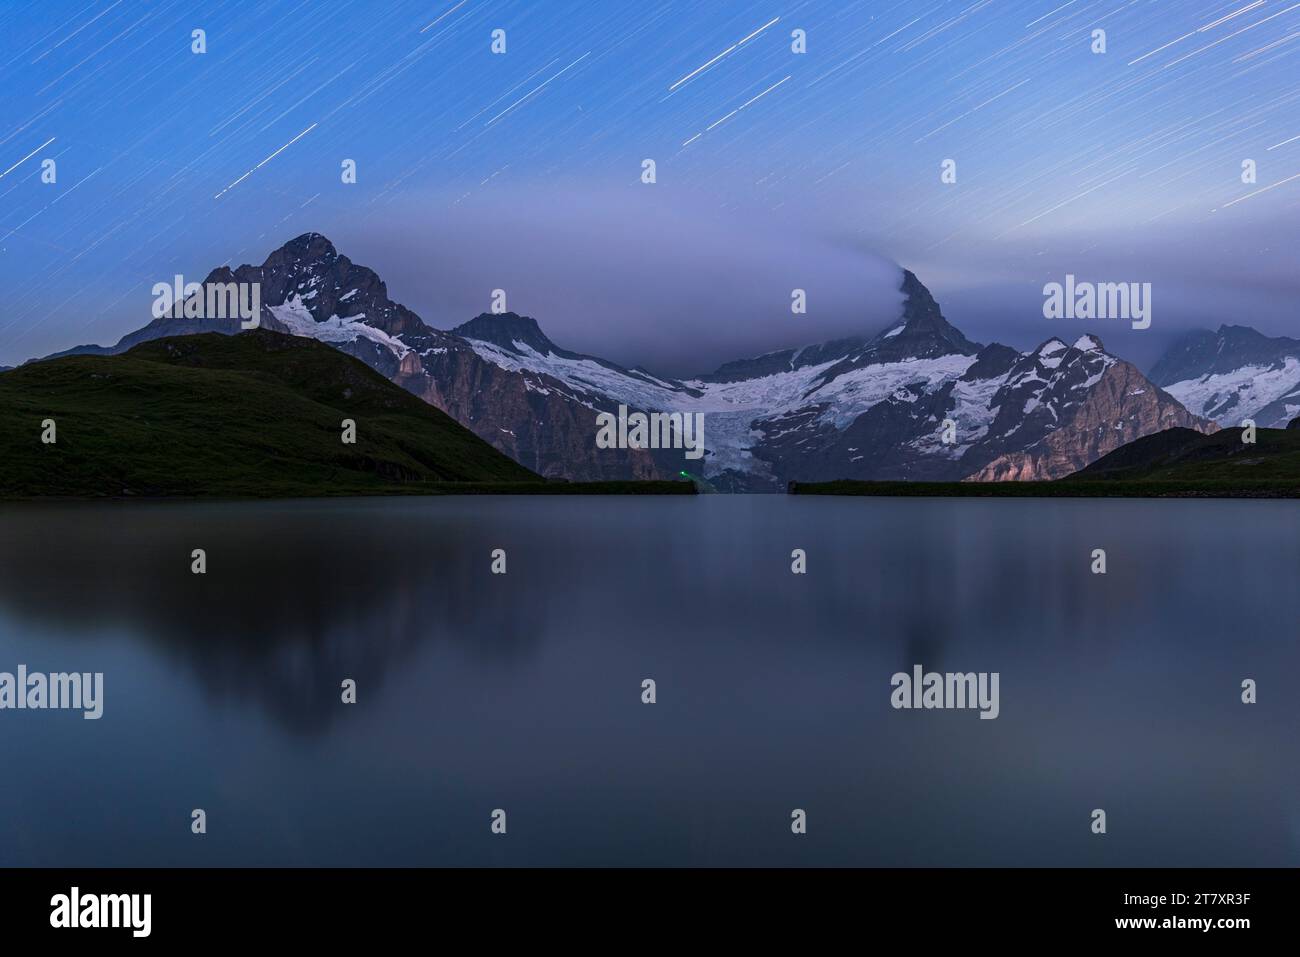 Sentier des étoiles sur Bachalpsee et les montagnes de l'Oberland bernois, Grindelwald, canton de Berne, Suisse, Europe Banque D'Images